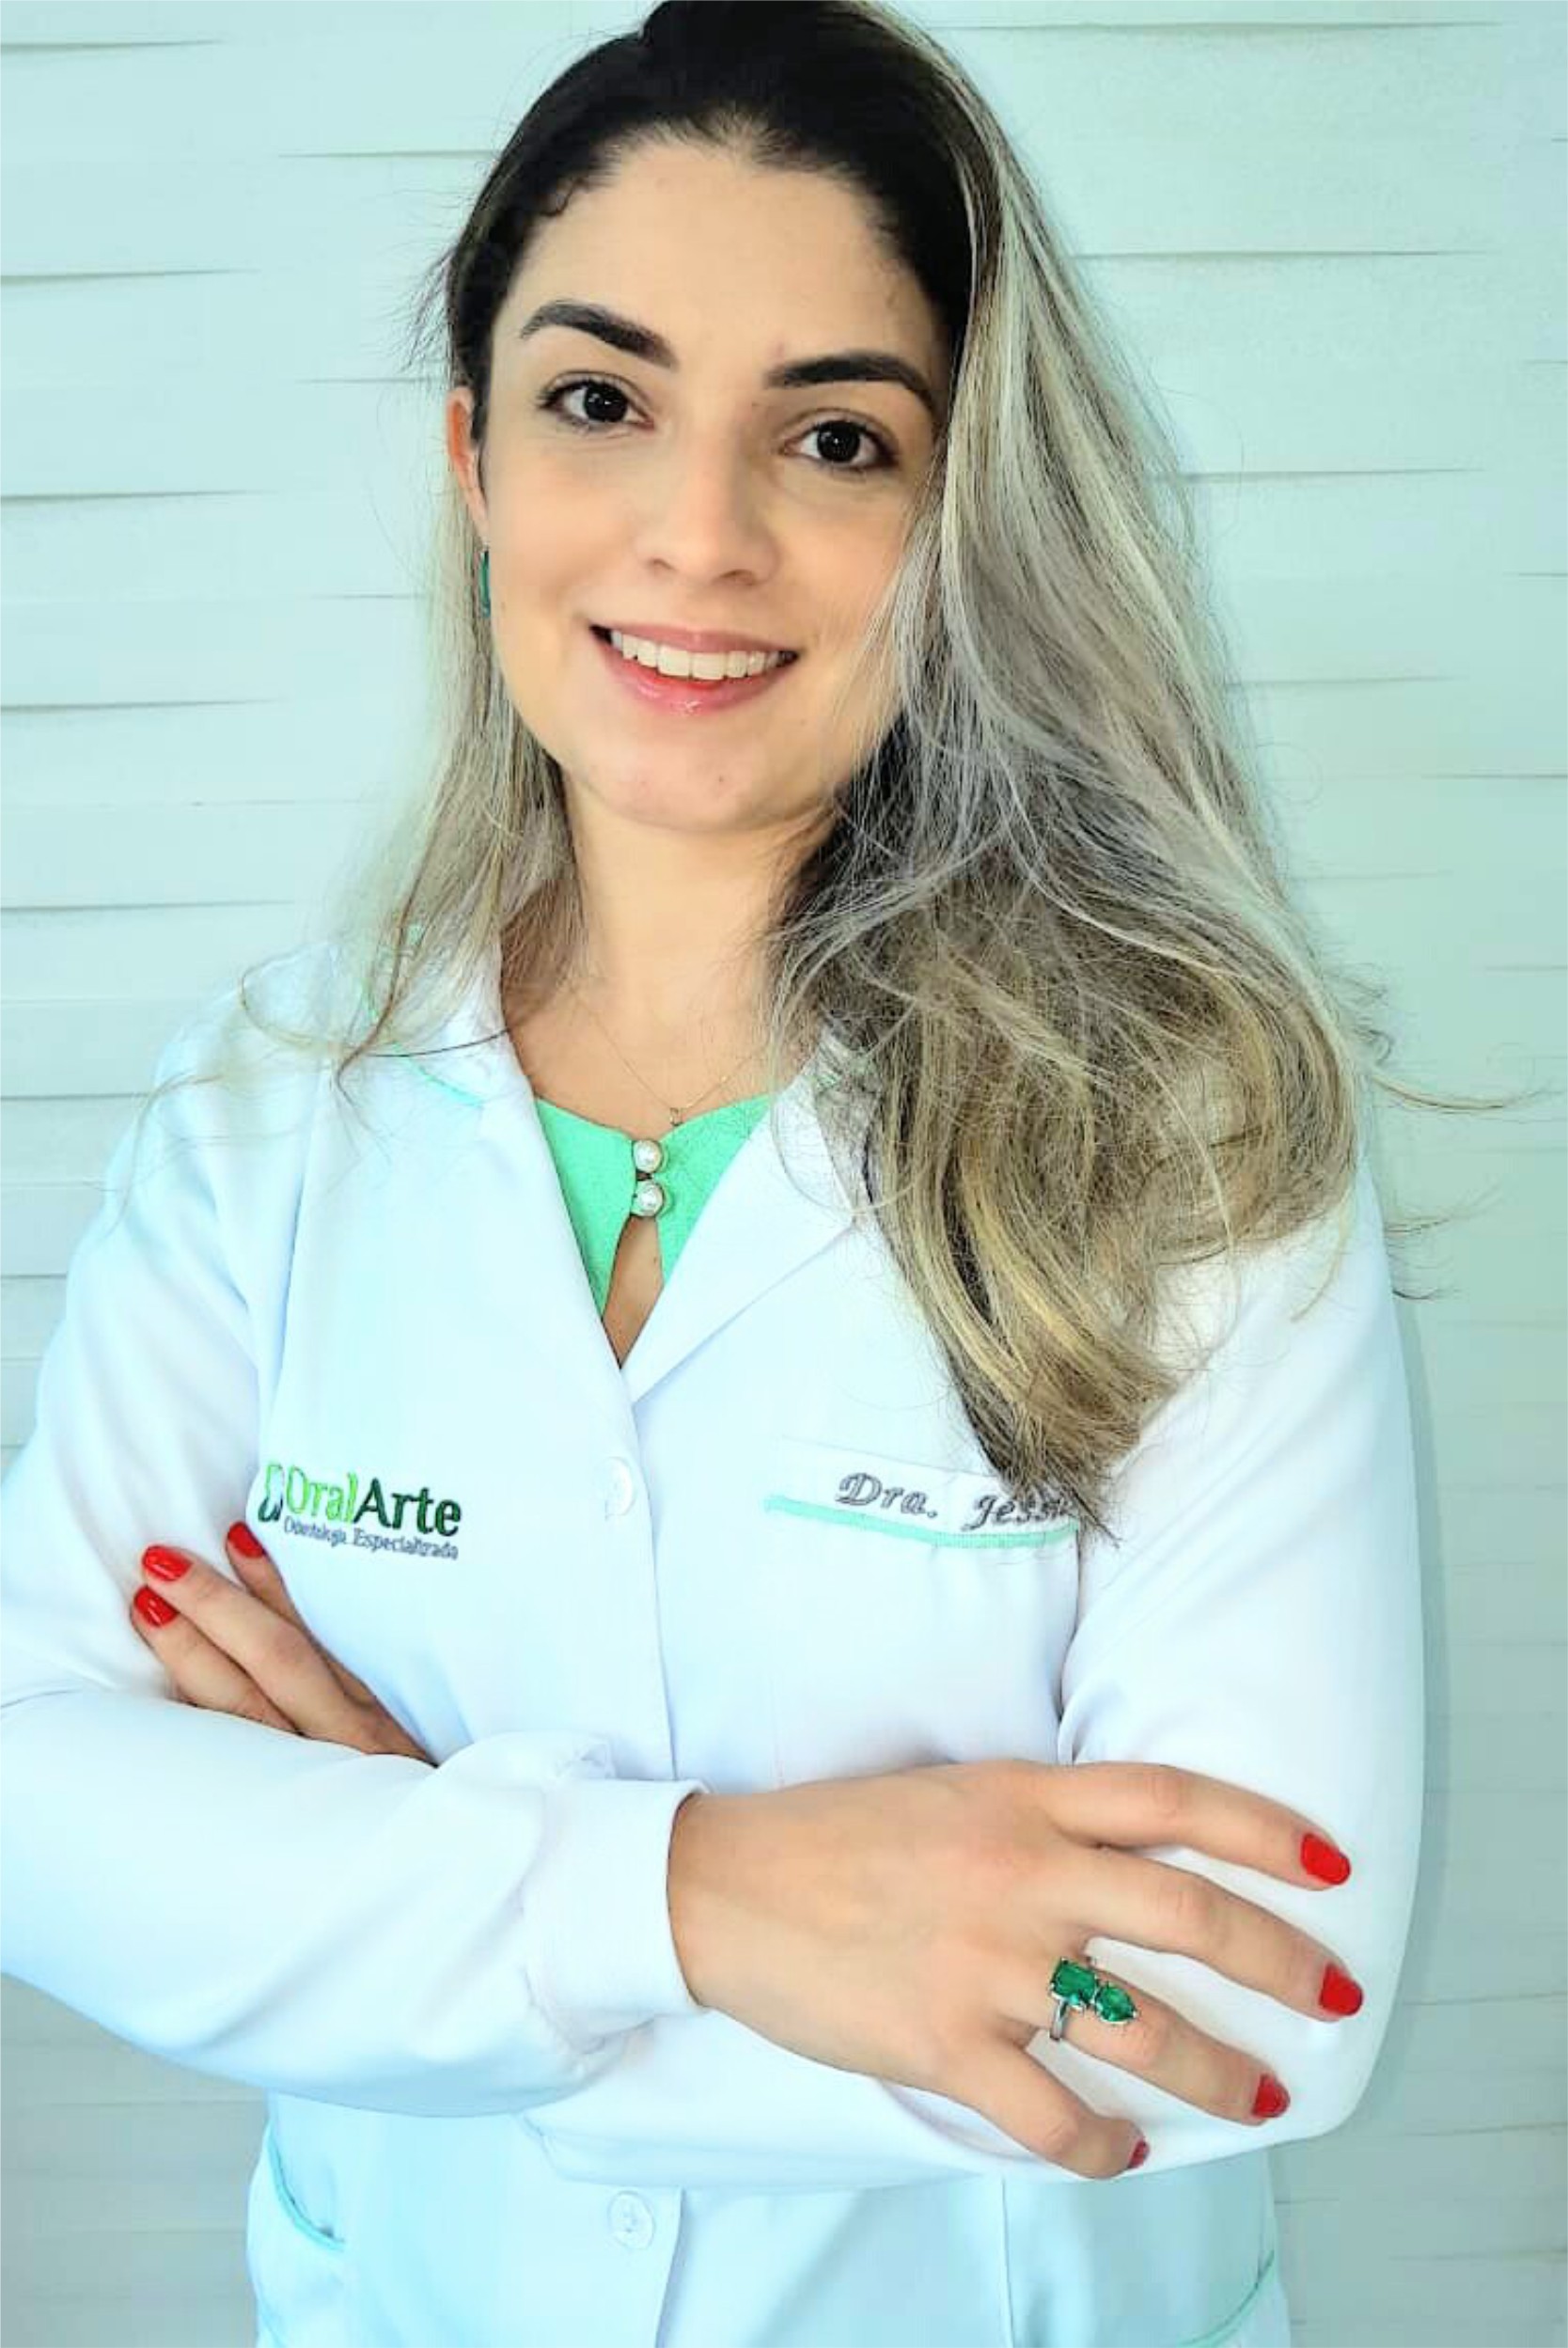 Dra. Jéssica Coelho Caires - Oral Arte Odontologia